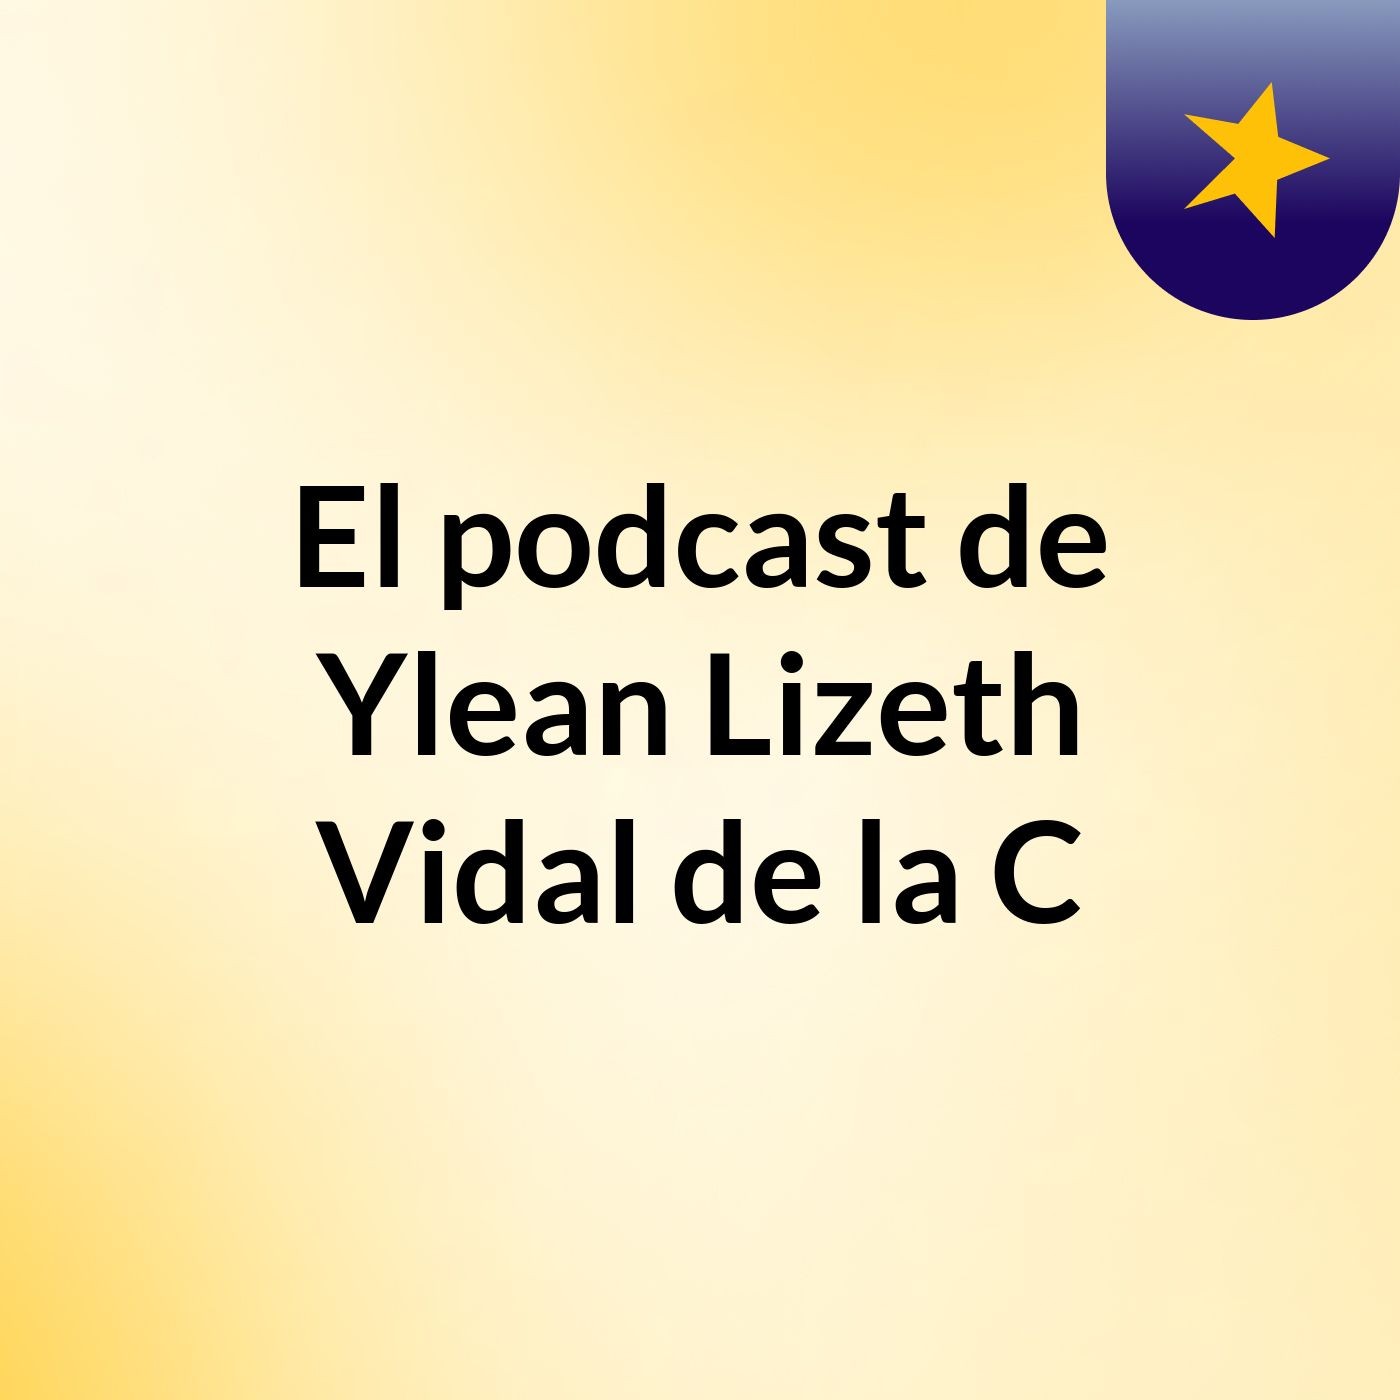 El podcast de Ylean Lizeth Vidal de la C